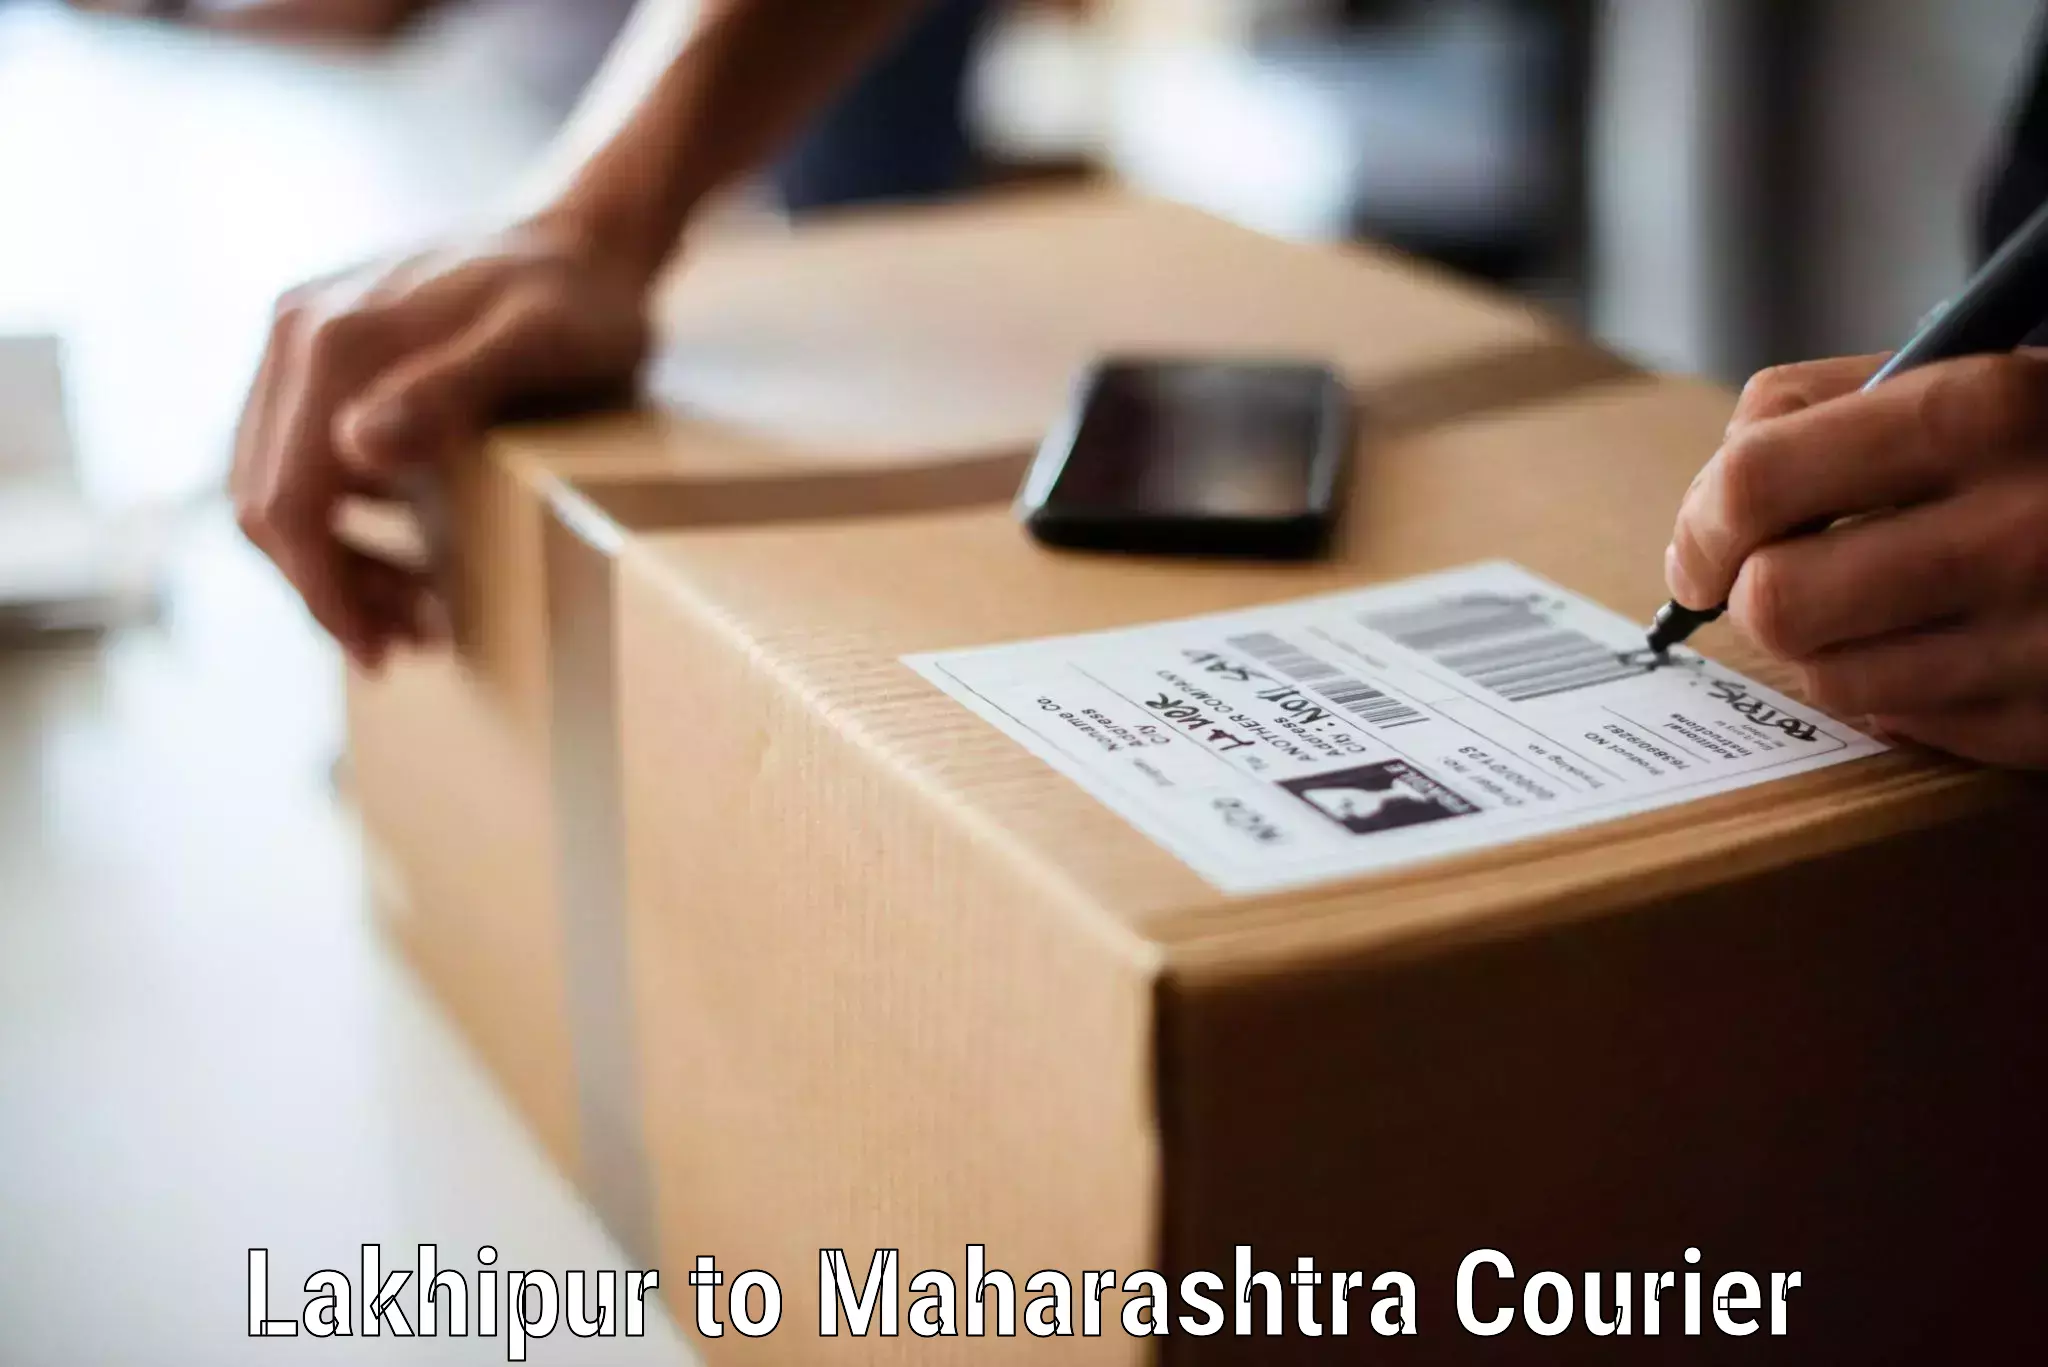 Furniture shipping services Lakhipur to Mumbai